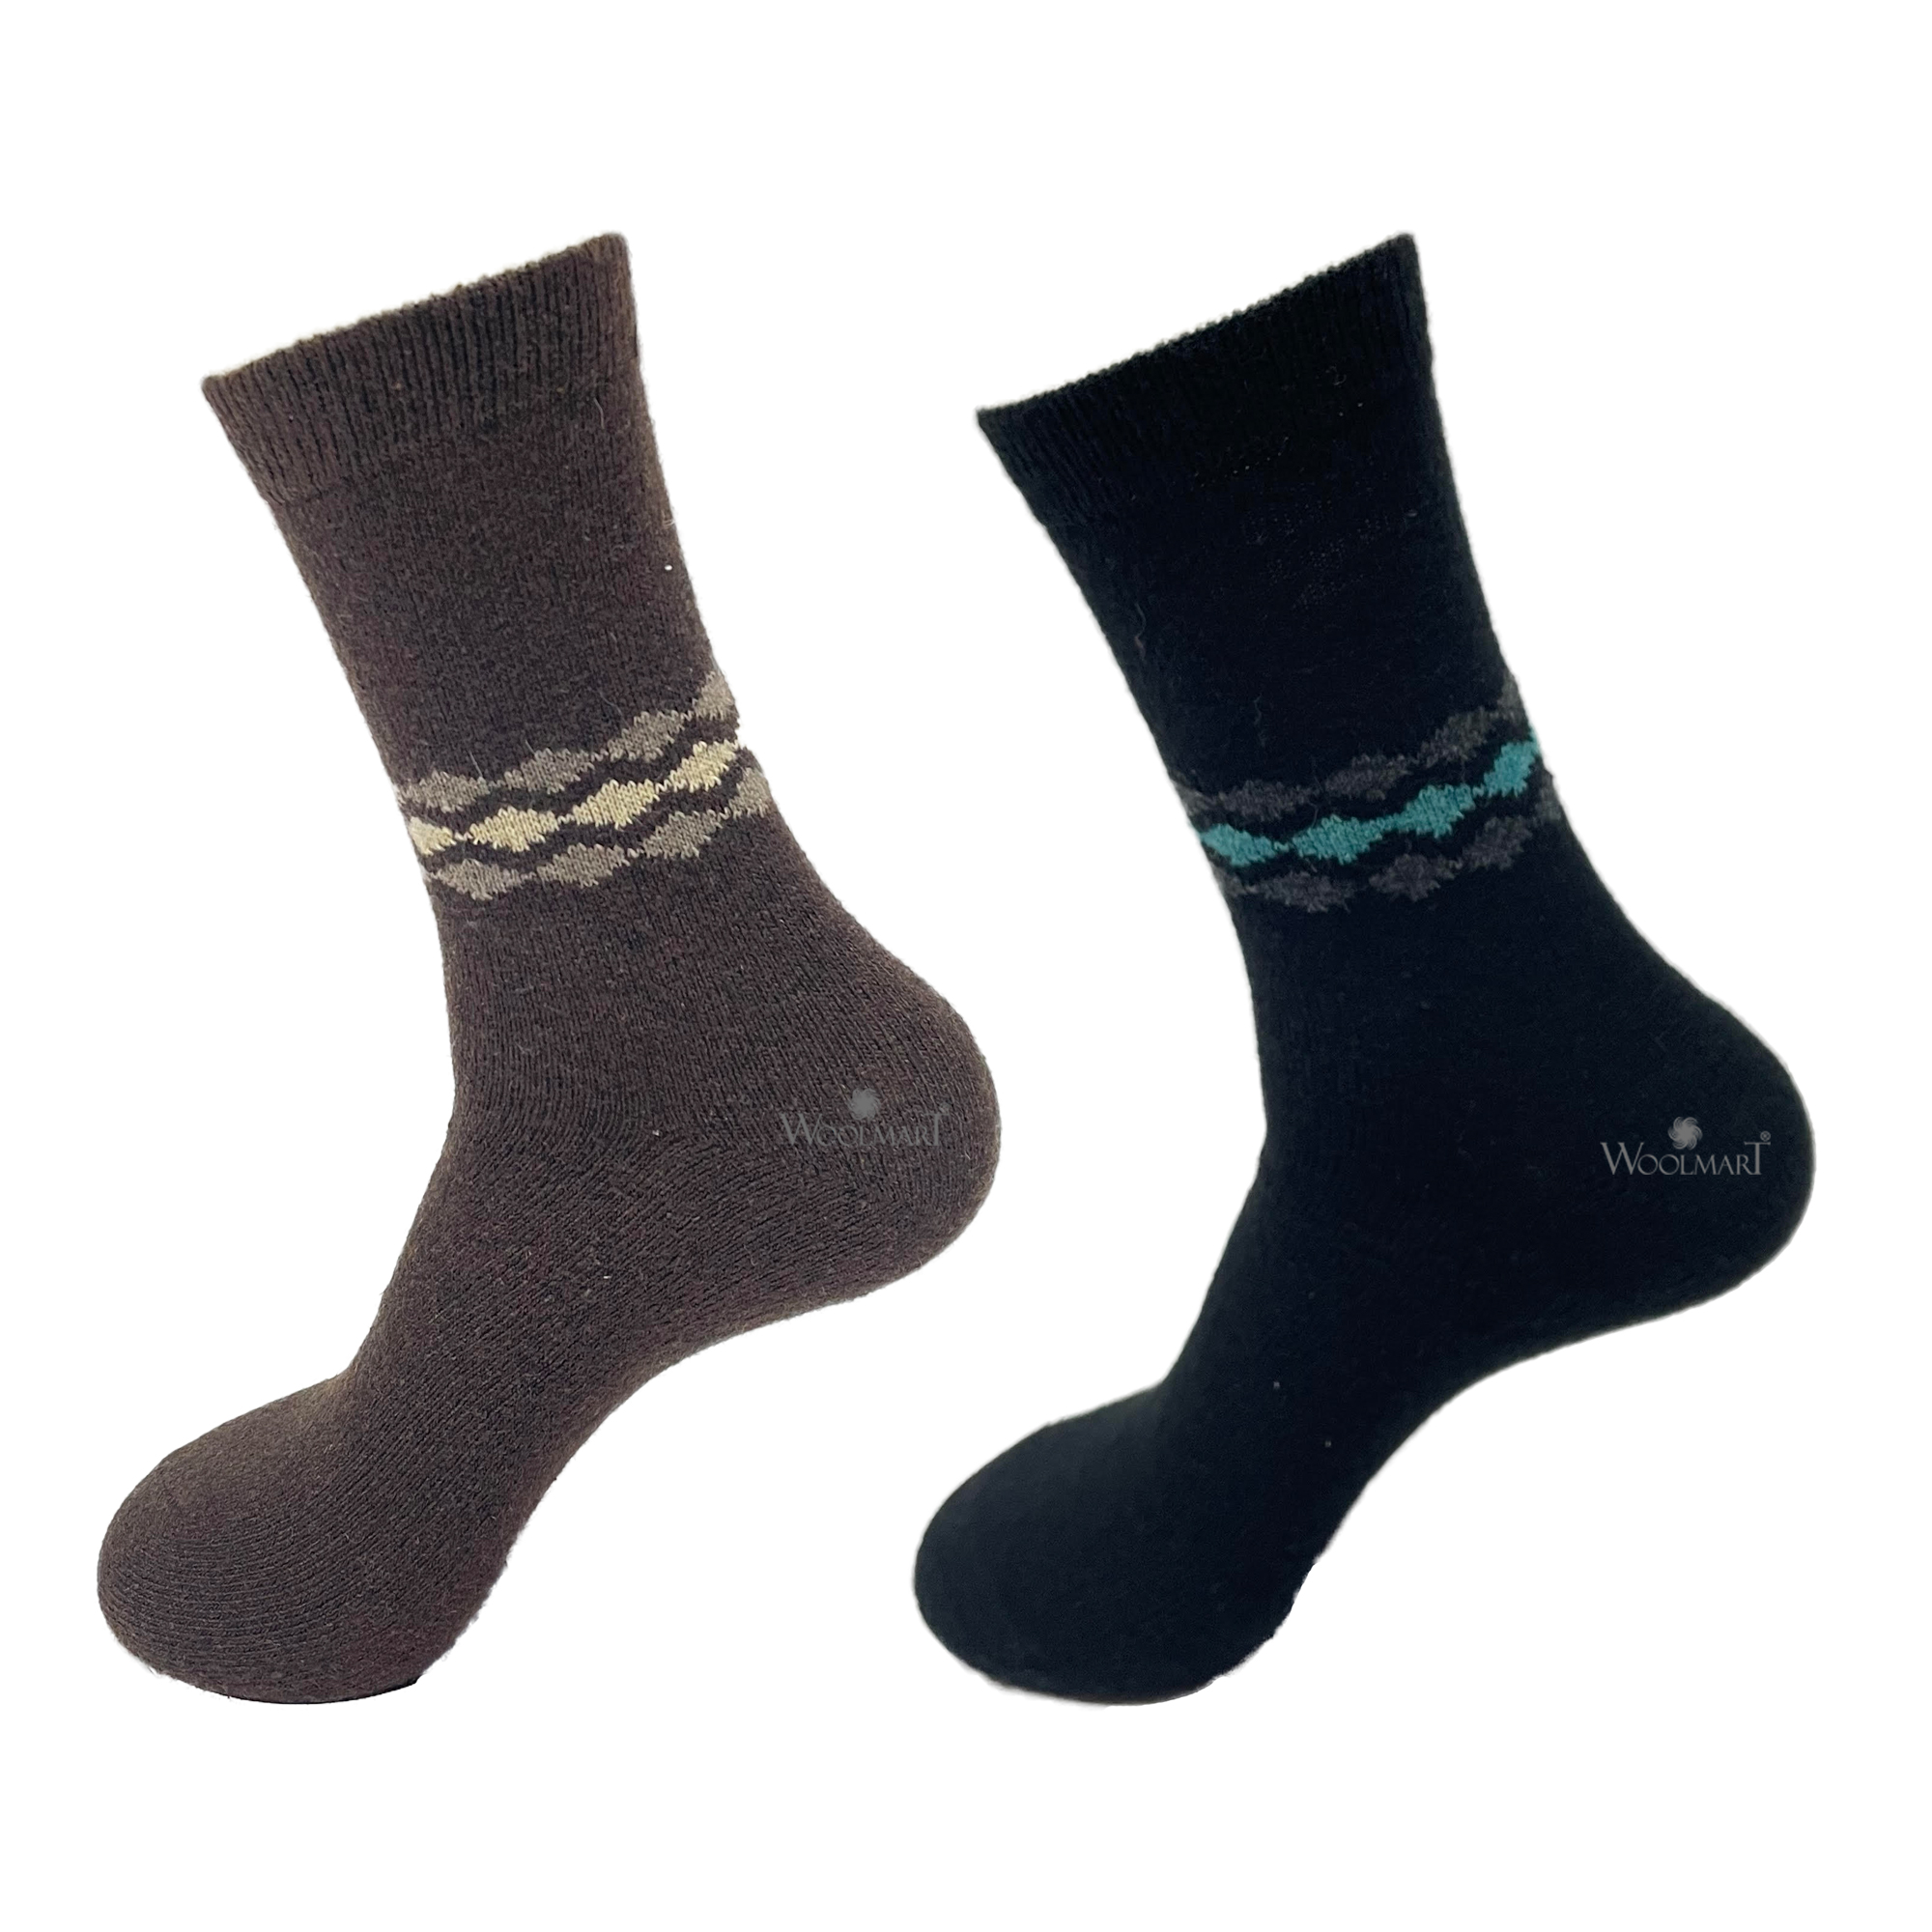 Warm Socks (Pack of 2) Brown & Black